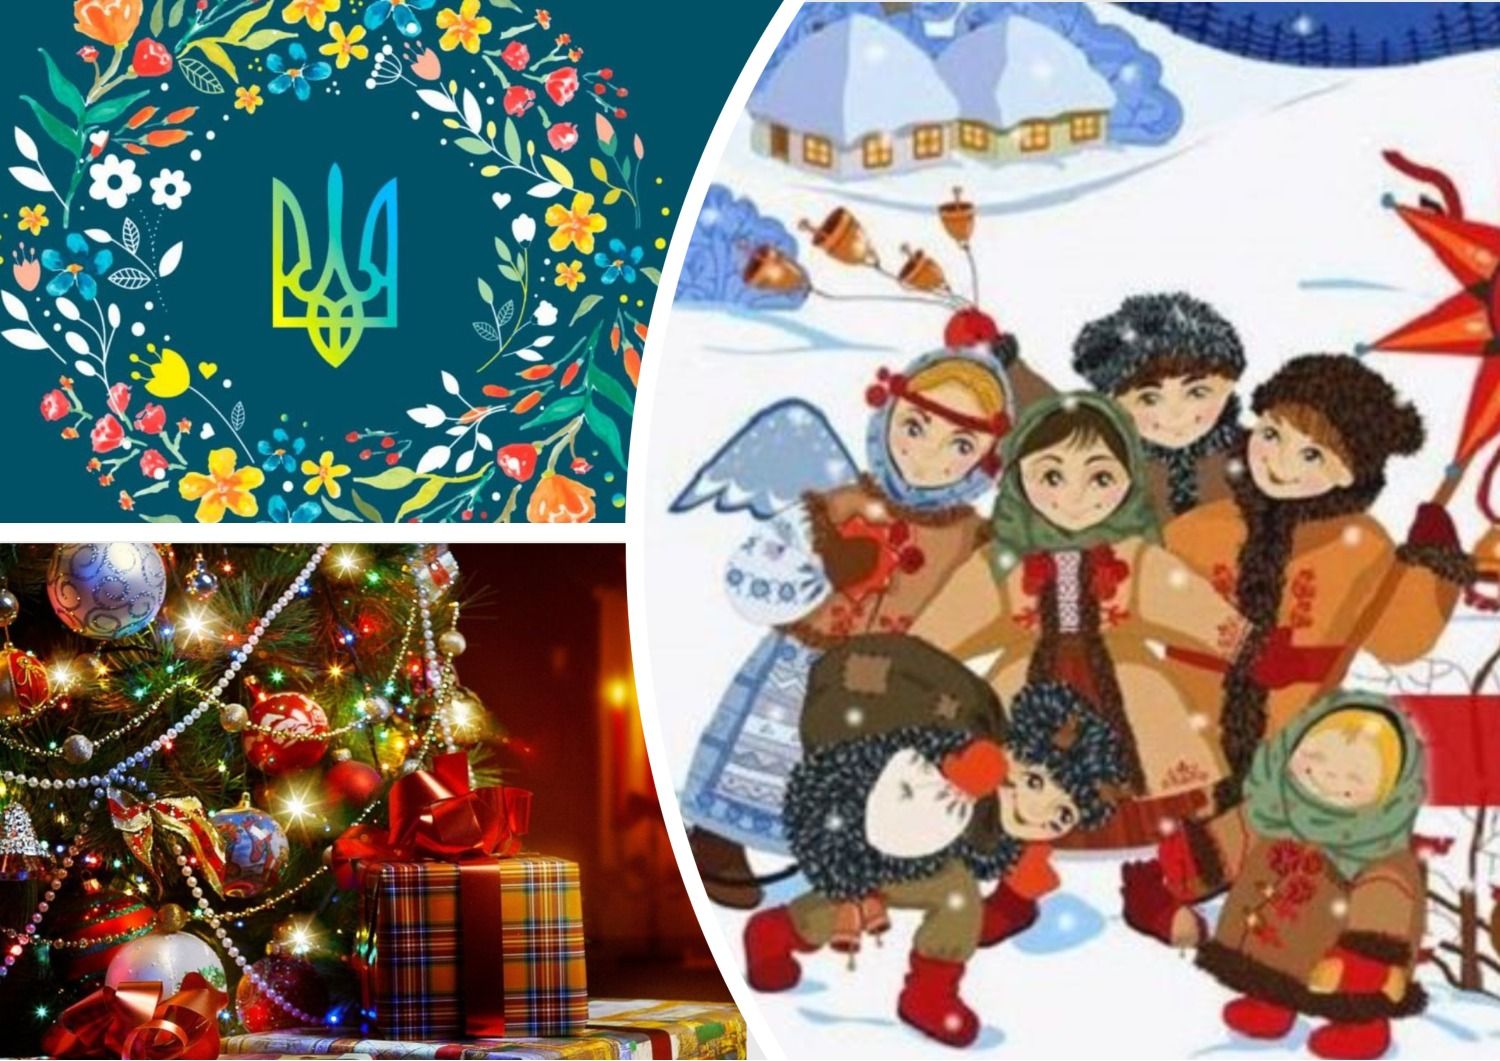 Іншомовні слова - як українською говорити про Новий рік, Різдво та інші свята 